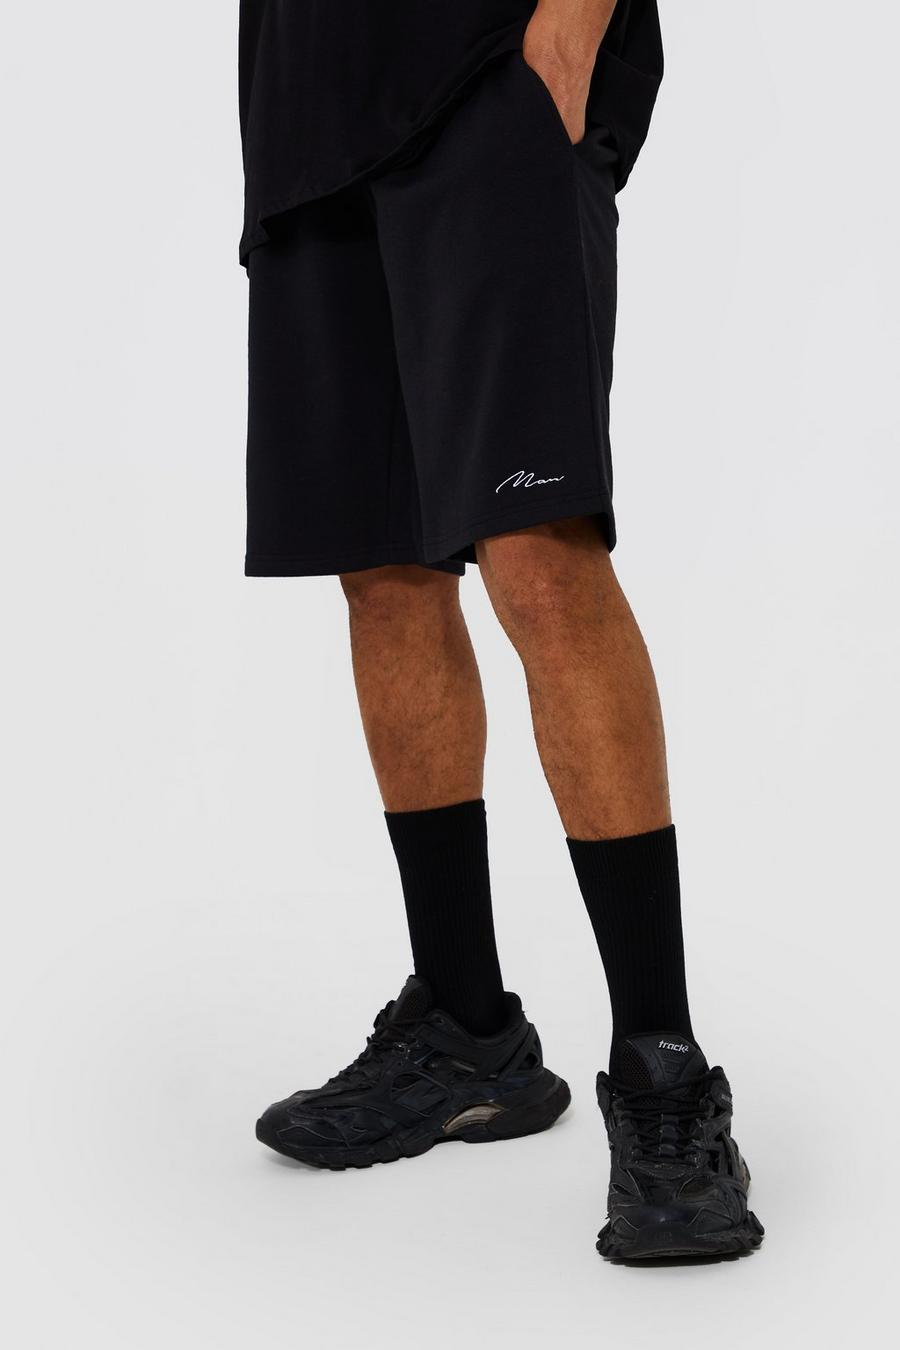 Mens shorts | Shop all shorts for men | boohoo Australia